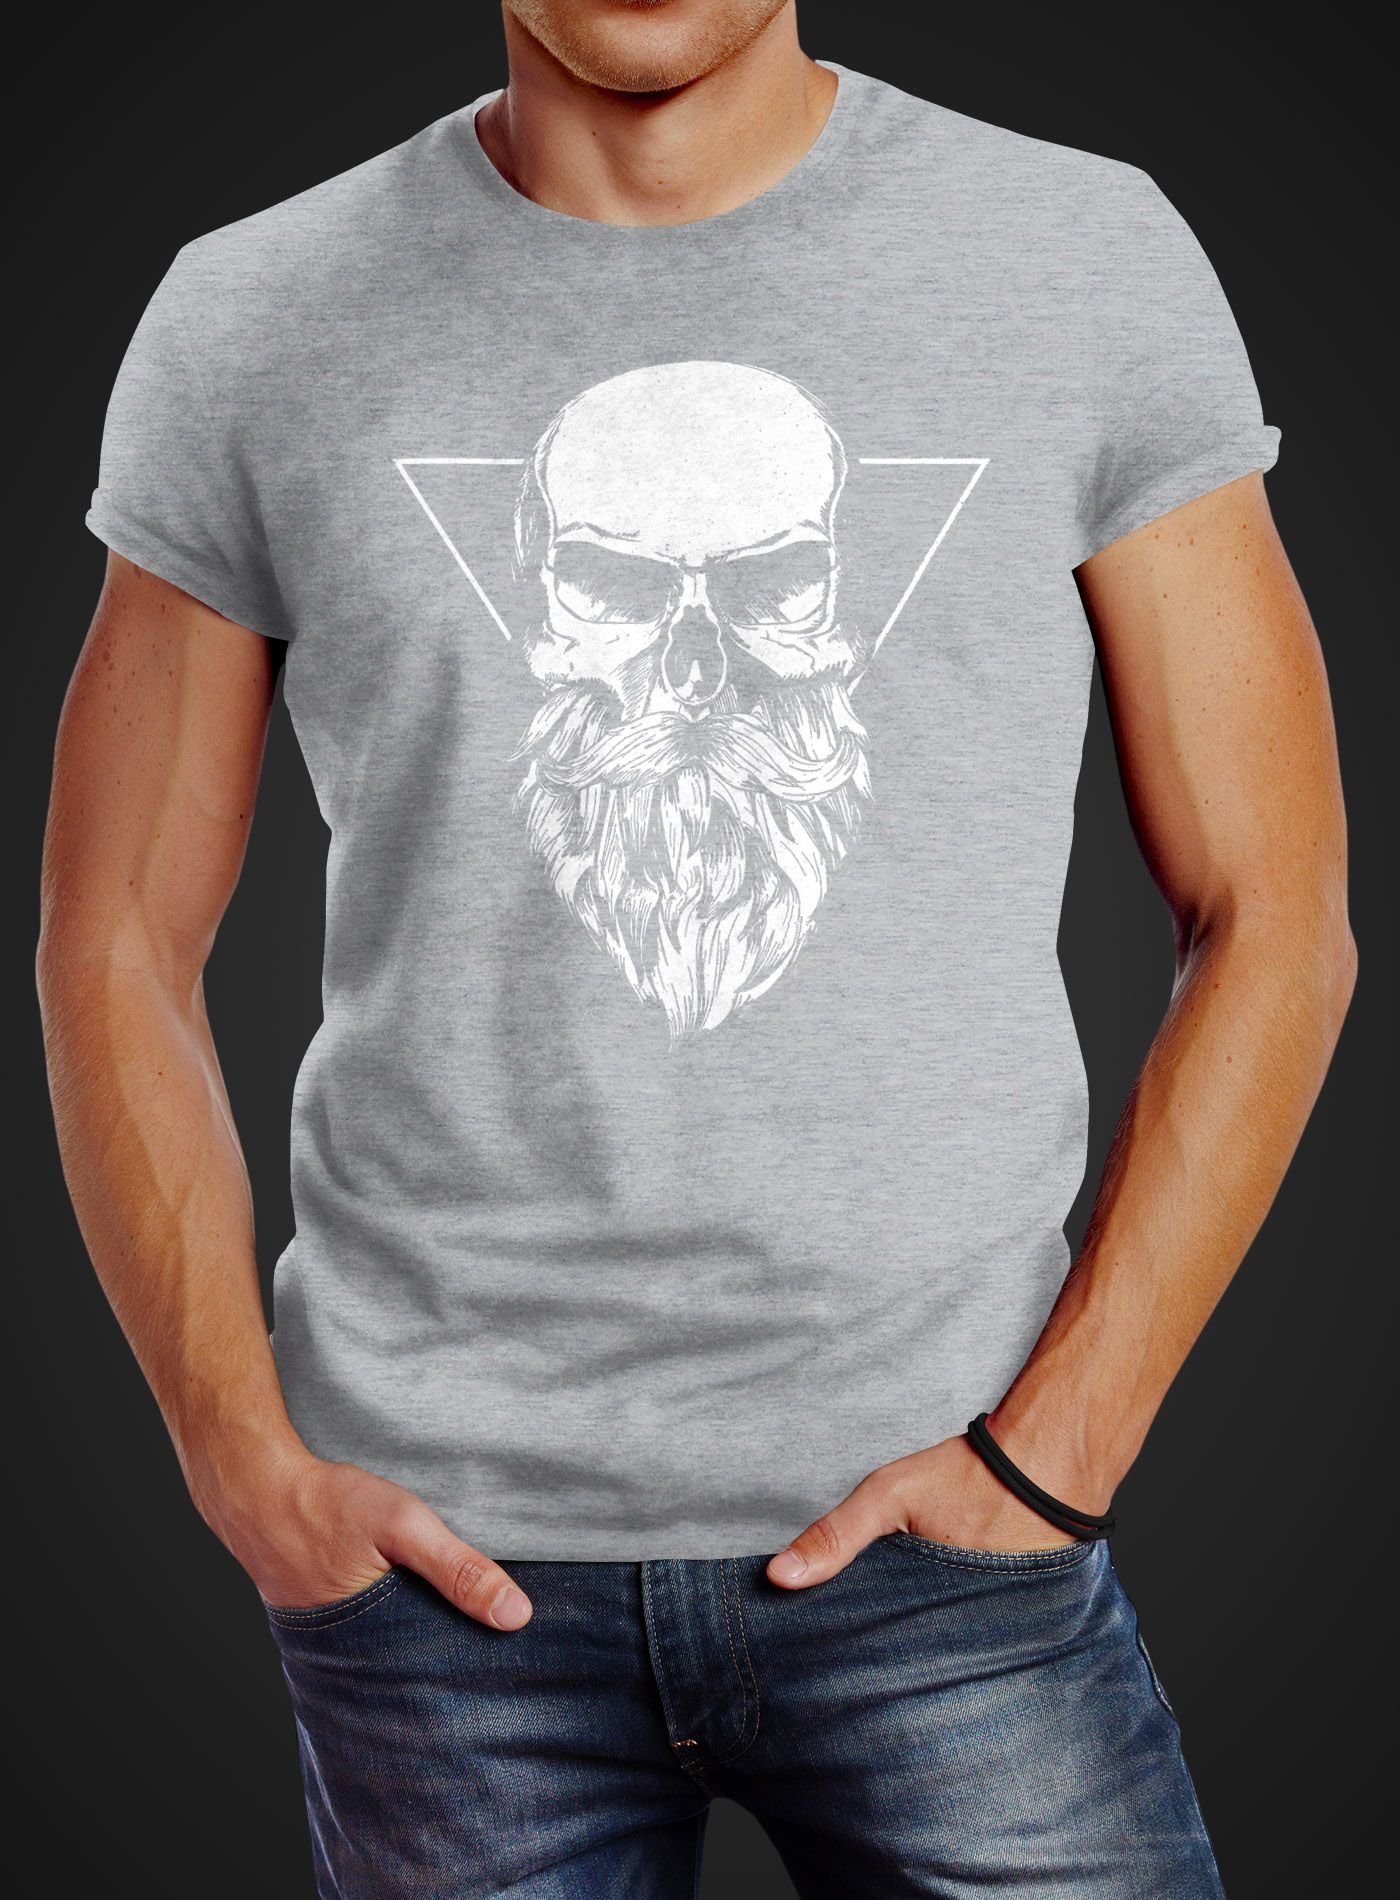 Neverless® Bart mit Neverless Slim grau T-Shirt mit Herren Totenkopf Print-Shirt Fit Print Triangle